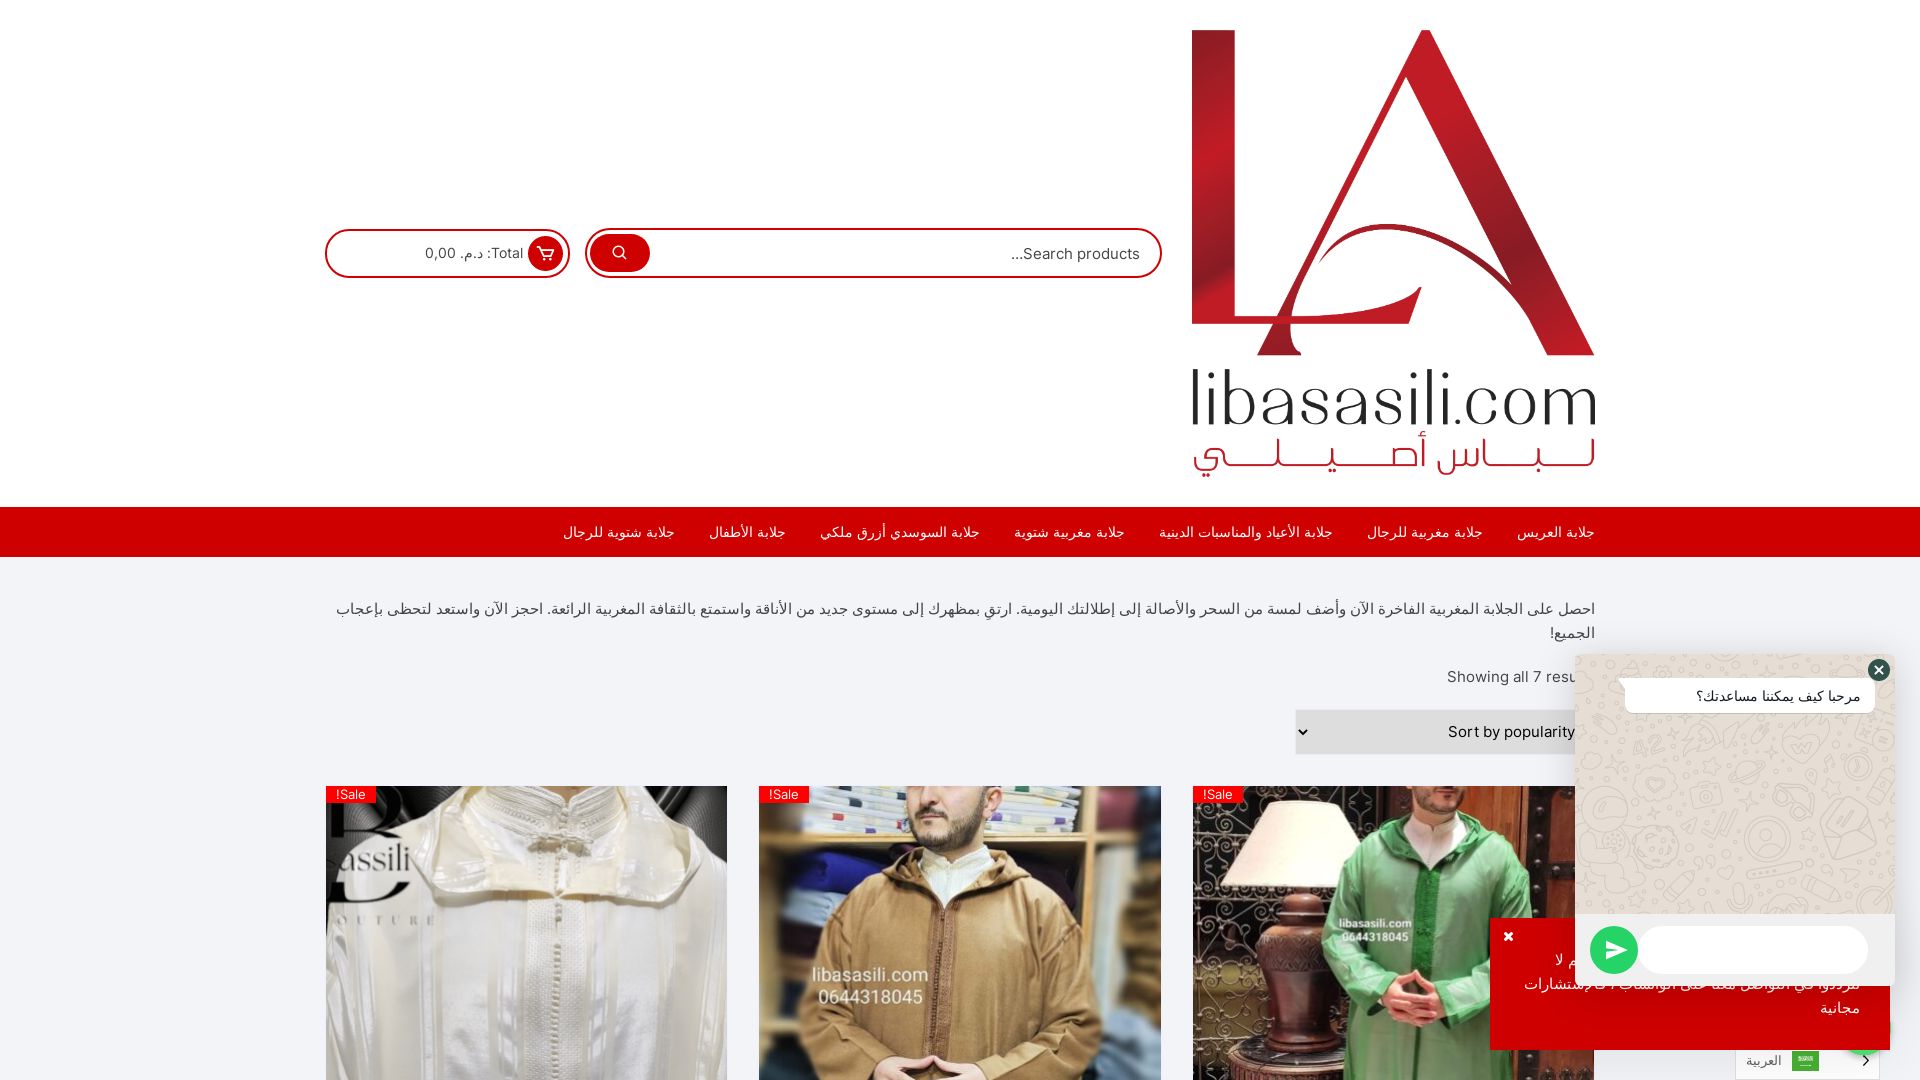 Stato del sito web libasasili.com è   ONLINE